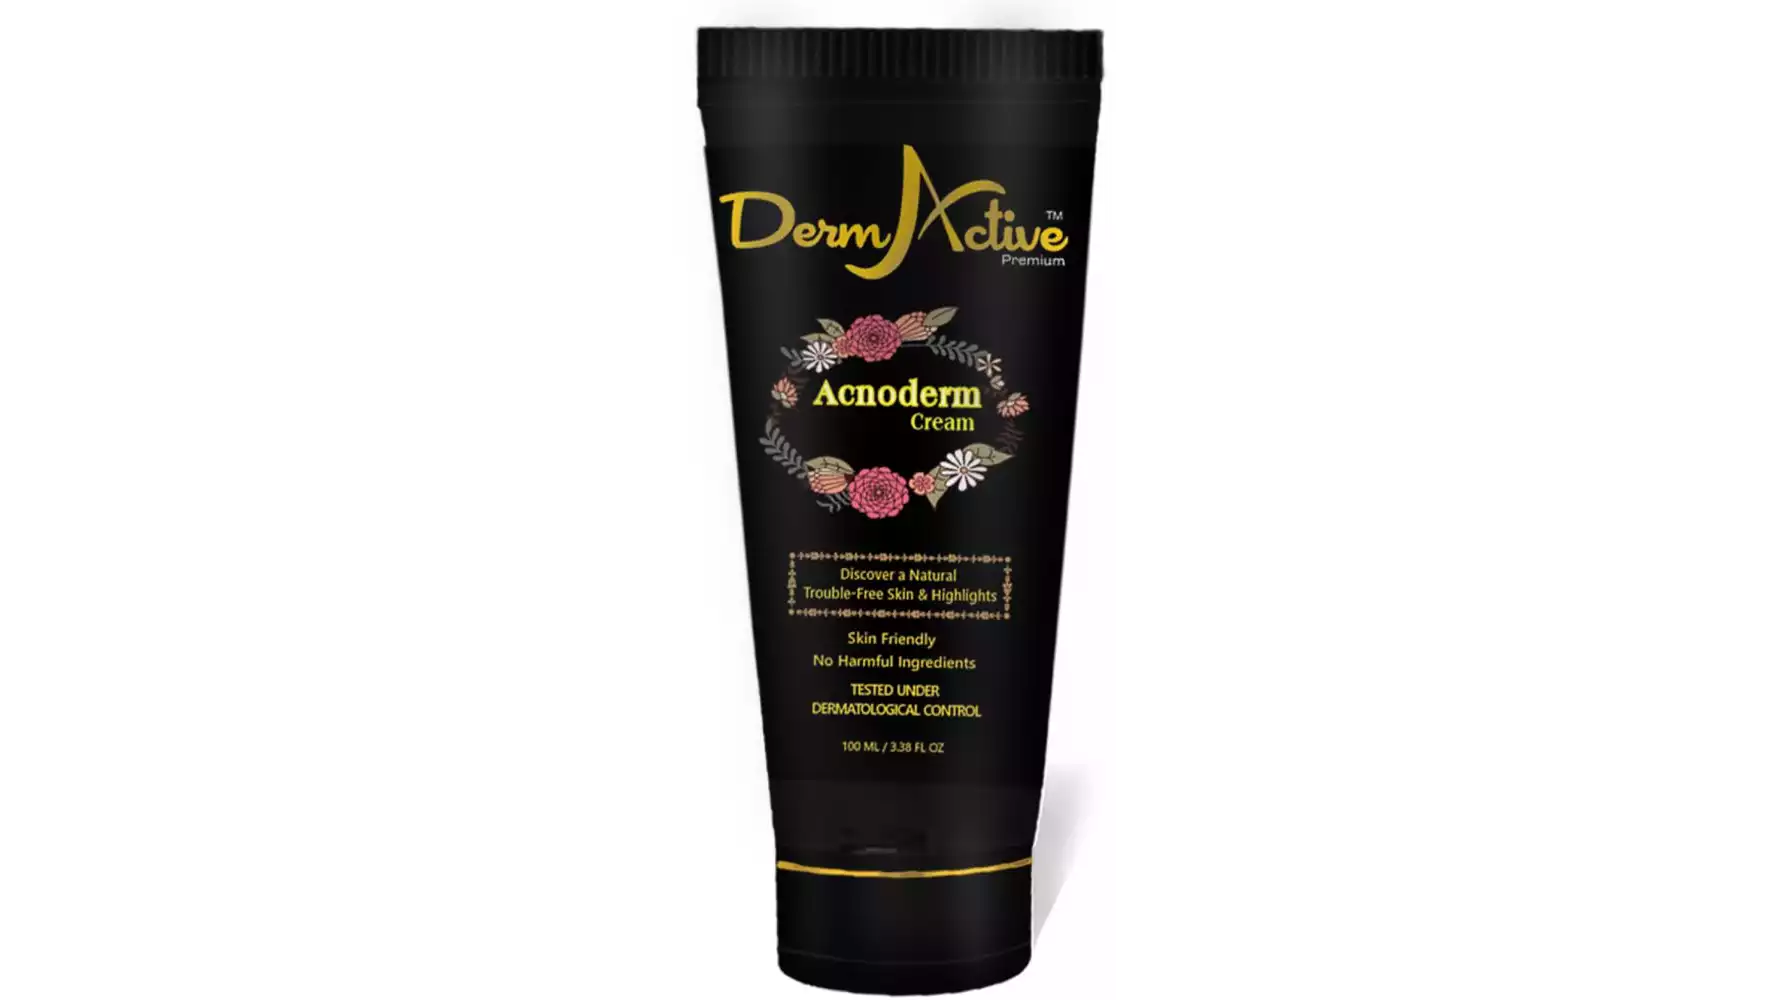 DermActive Acnoderm Cream (100ml)